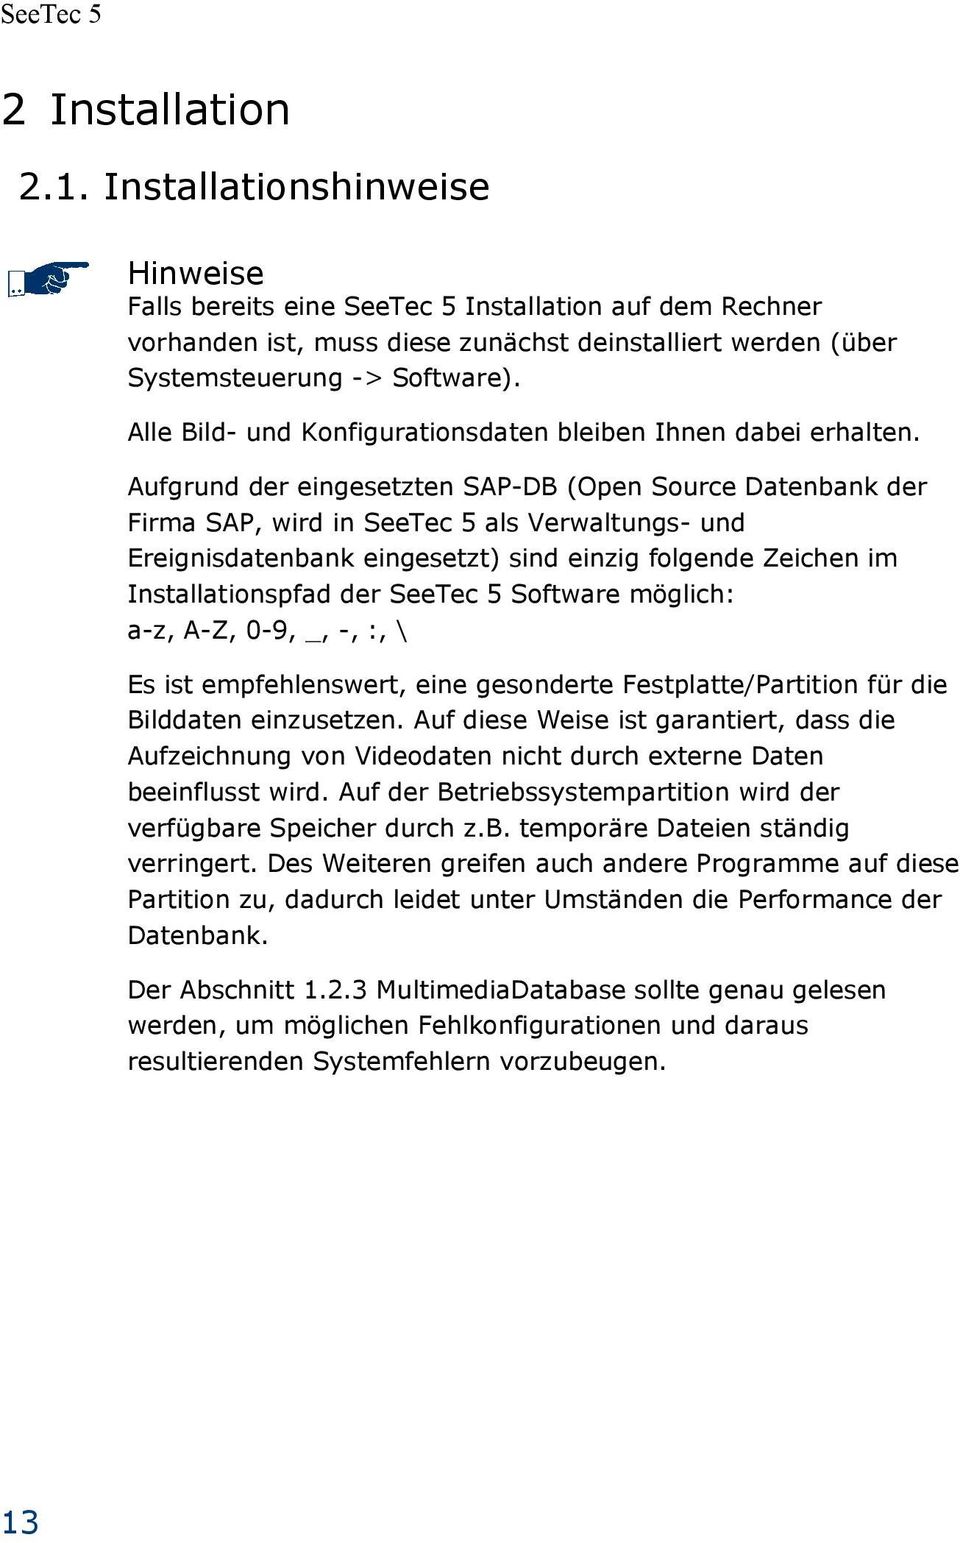 Aufgrund der eingesetzten SAP-DB (Open Source Datenbank der Firma SAP, wird in als Verwaltungs- und Ereignisdatenbank eingesetzt) sind einzig folgende Zeichen im Installationspfad der Software